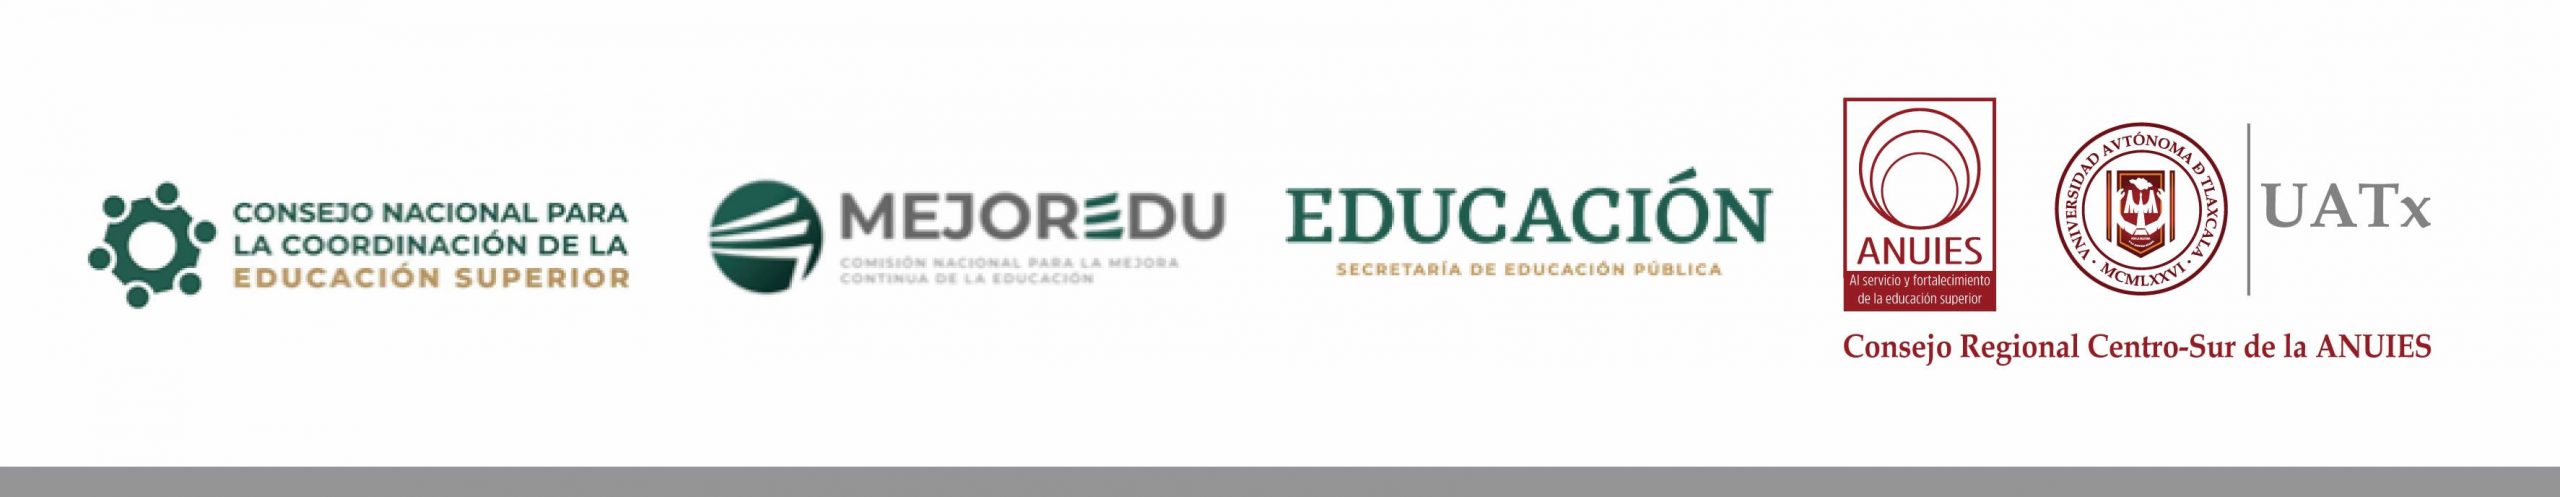 Foros regionales de consulta para el diseño del sistema de evaluación y acreditación de la educación superior logo